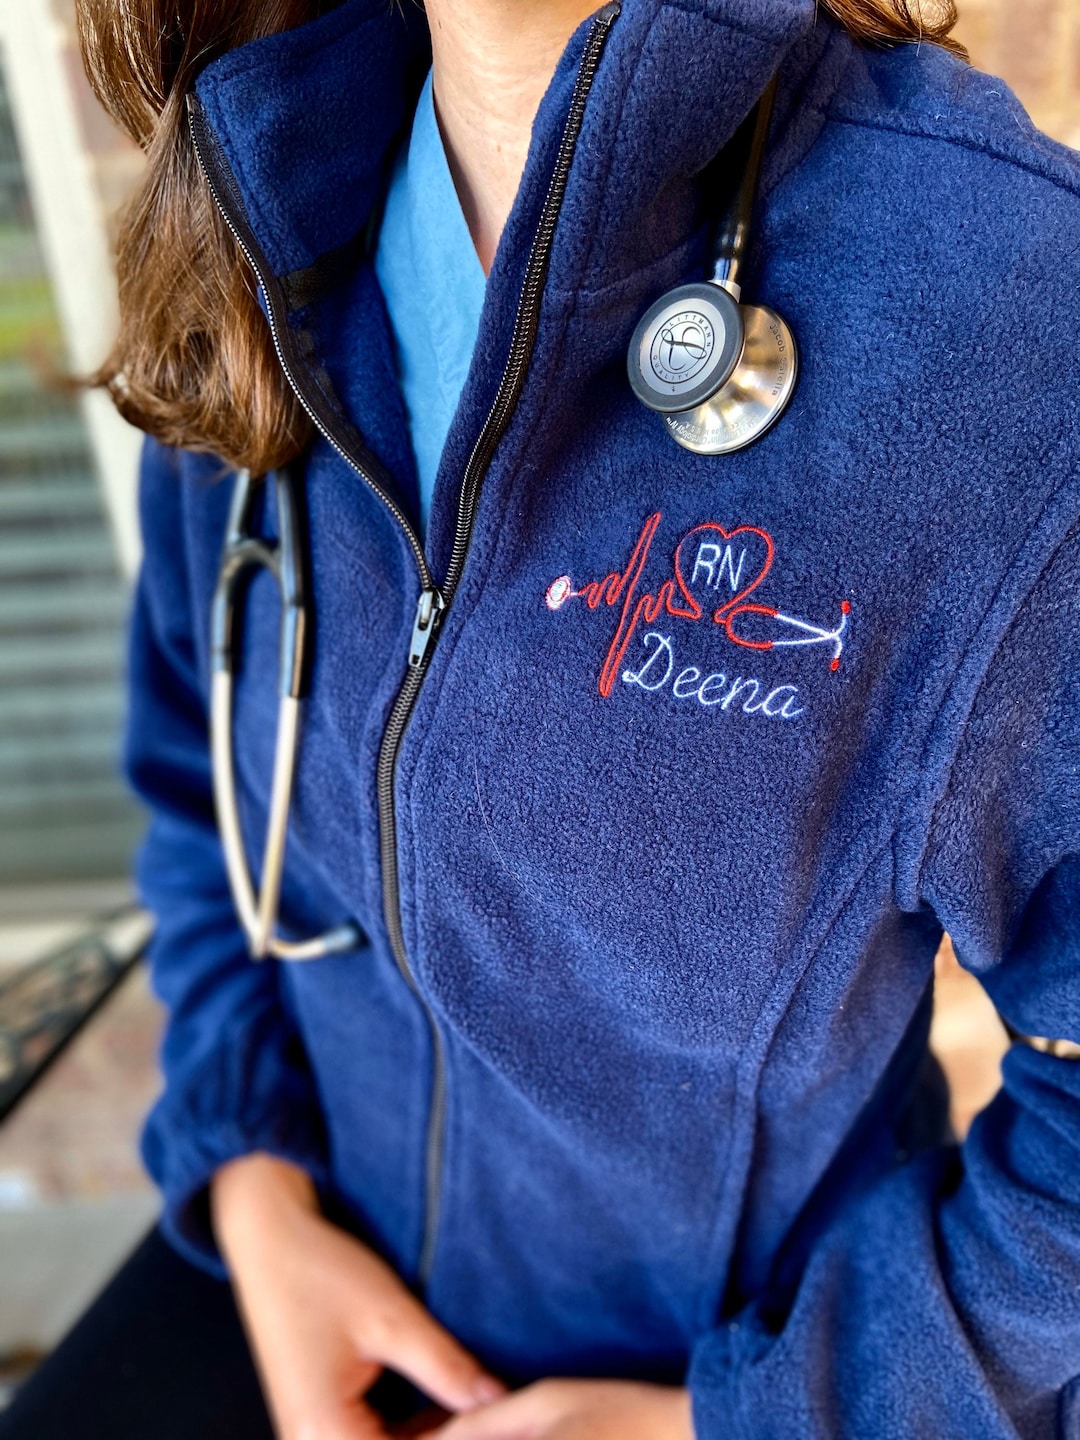  Cardiac Nurse Full-Zip Monogram Jacket, Custom Embroidery